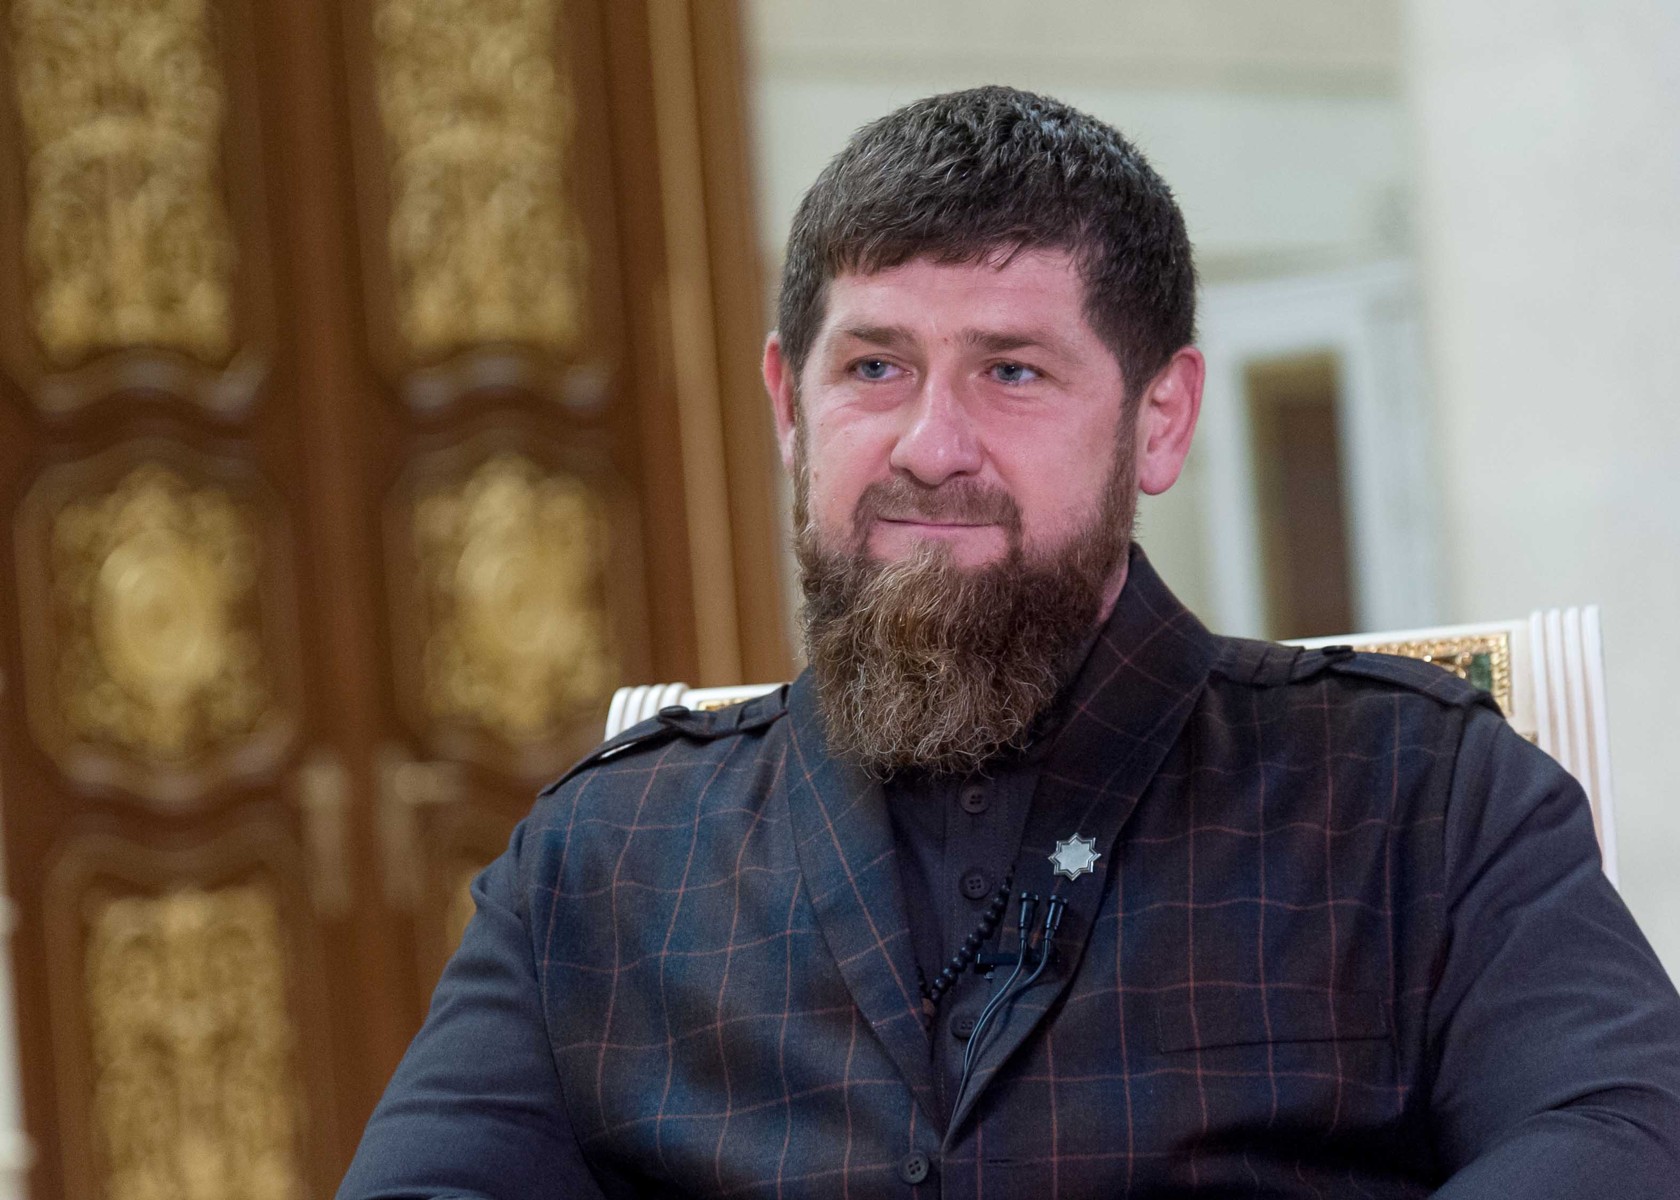 Глава Чечни Рамзан Кадыров за прошлый год увеличил доход более чем в два с половиной раза — до 381 млн рублей